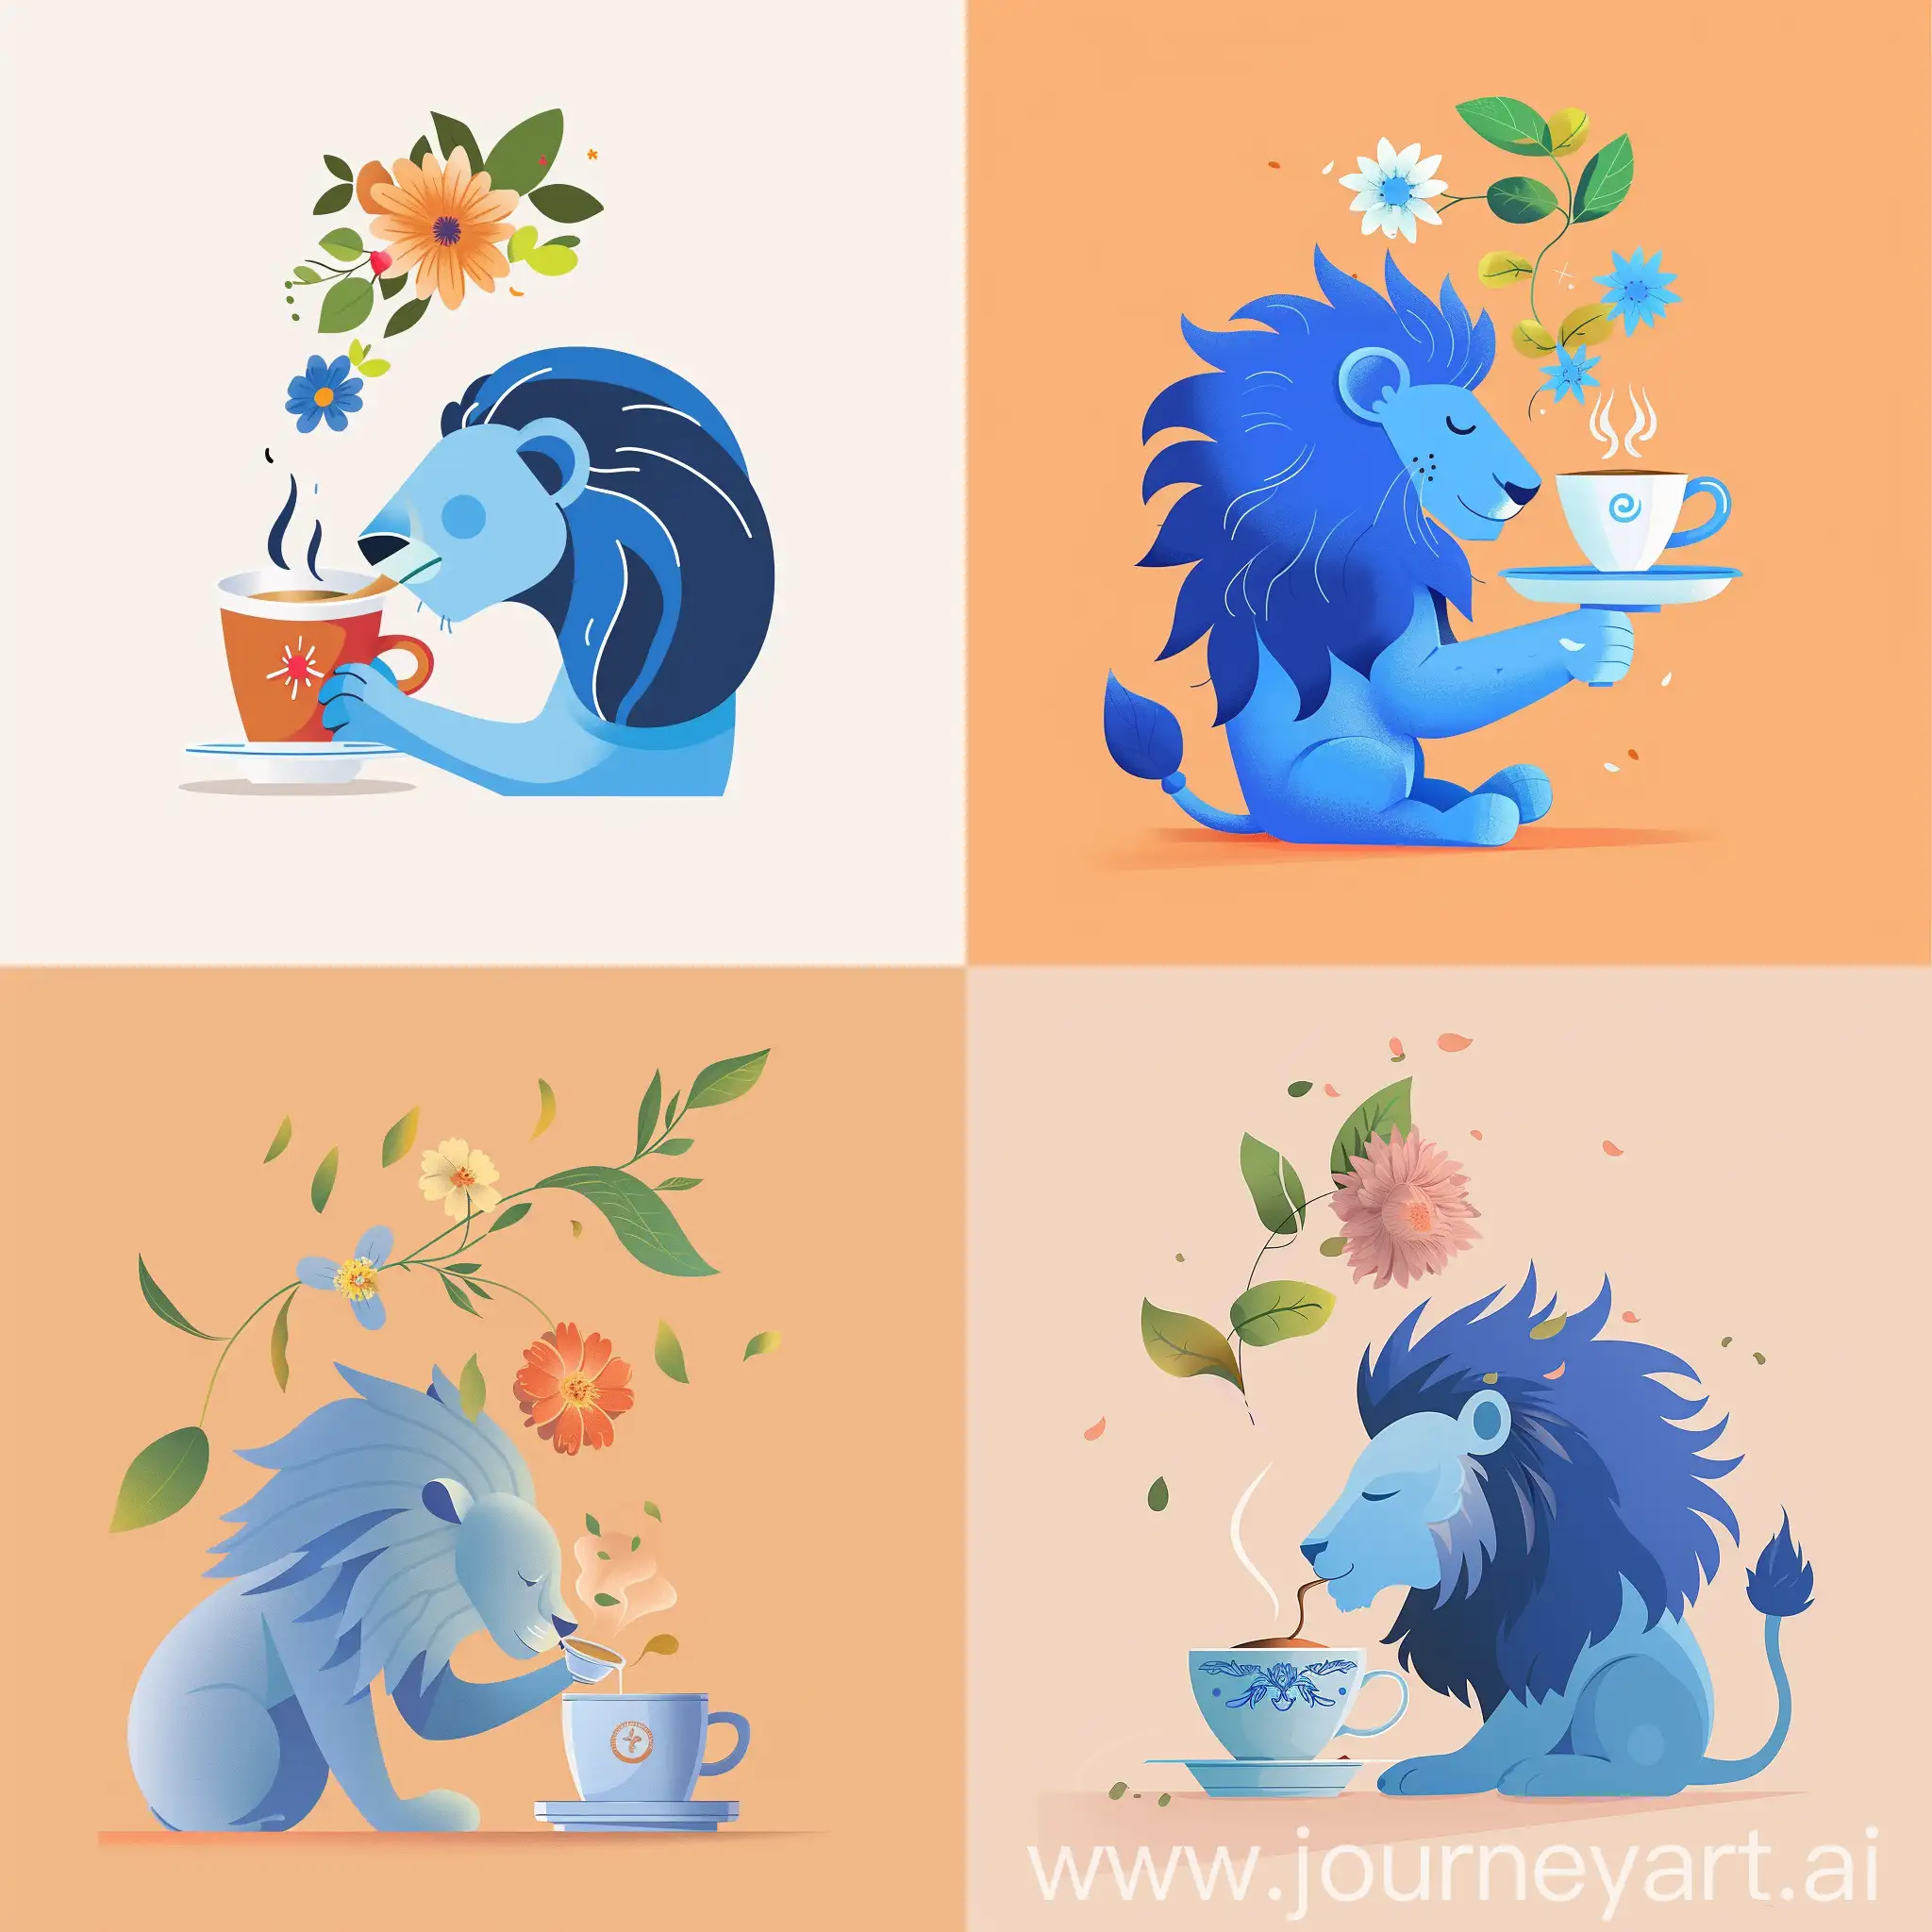 设计一个咖啡品牌的IP，主角是一个平面化的蓝色狮子，他优雅从容在喝咖啡，咖啡杯上方飘着鲜花，绿叶，狮子45度角面向屏幕